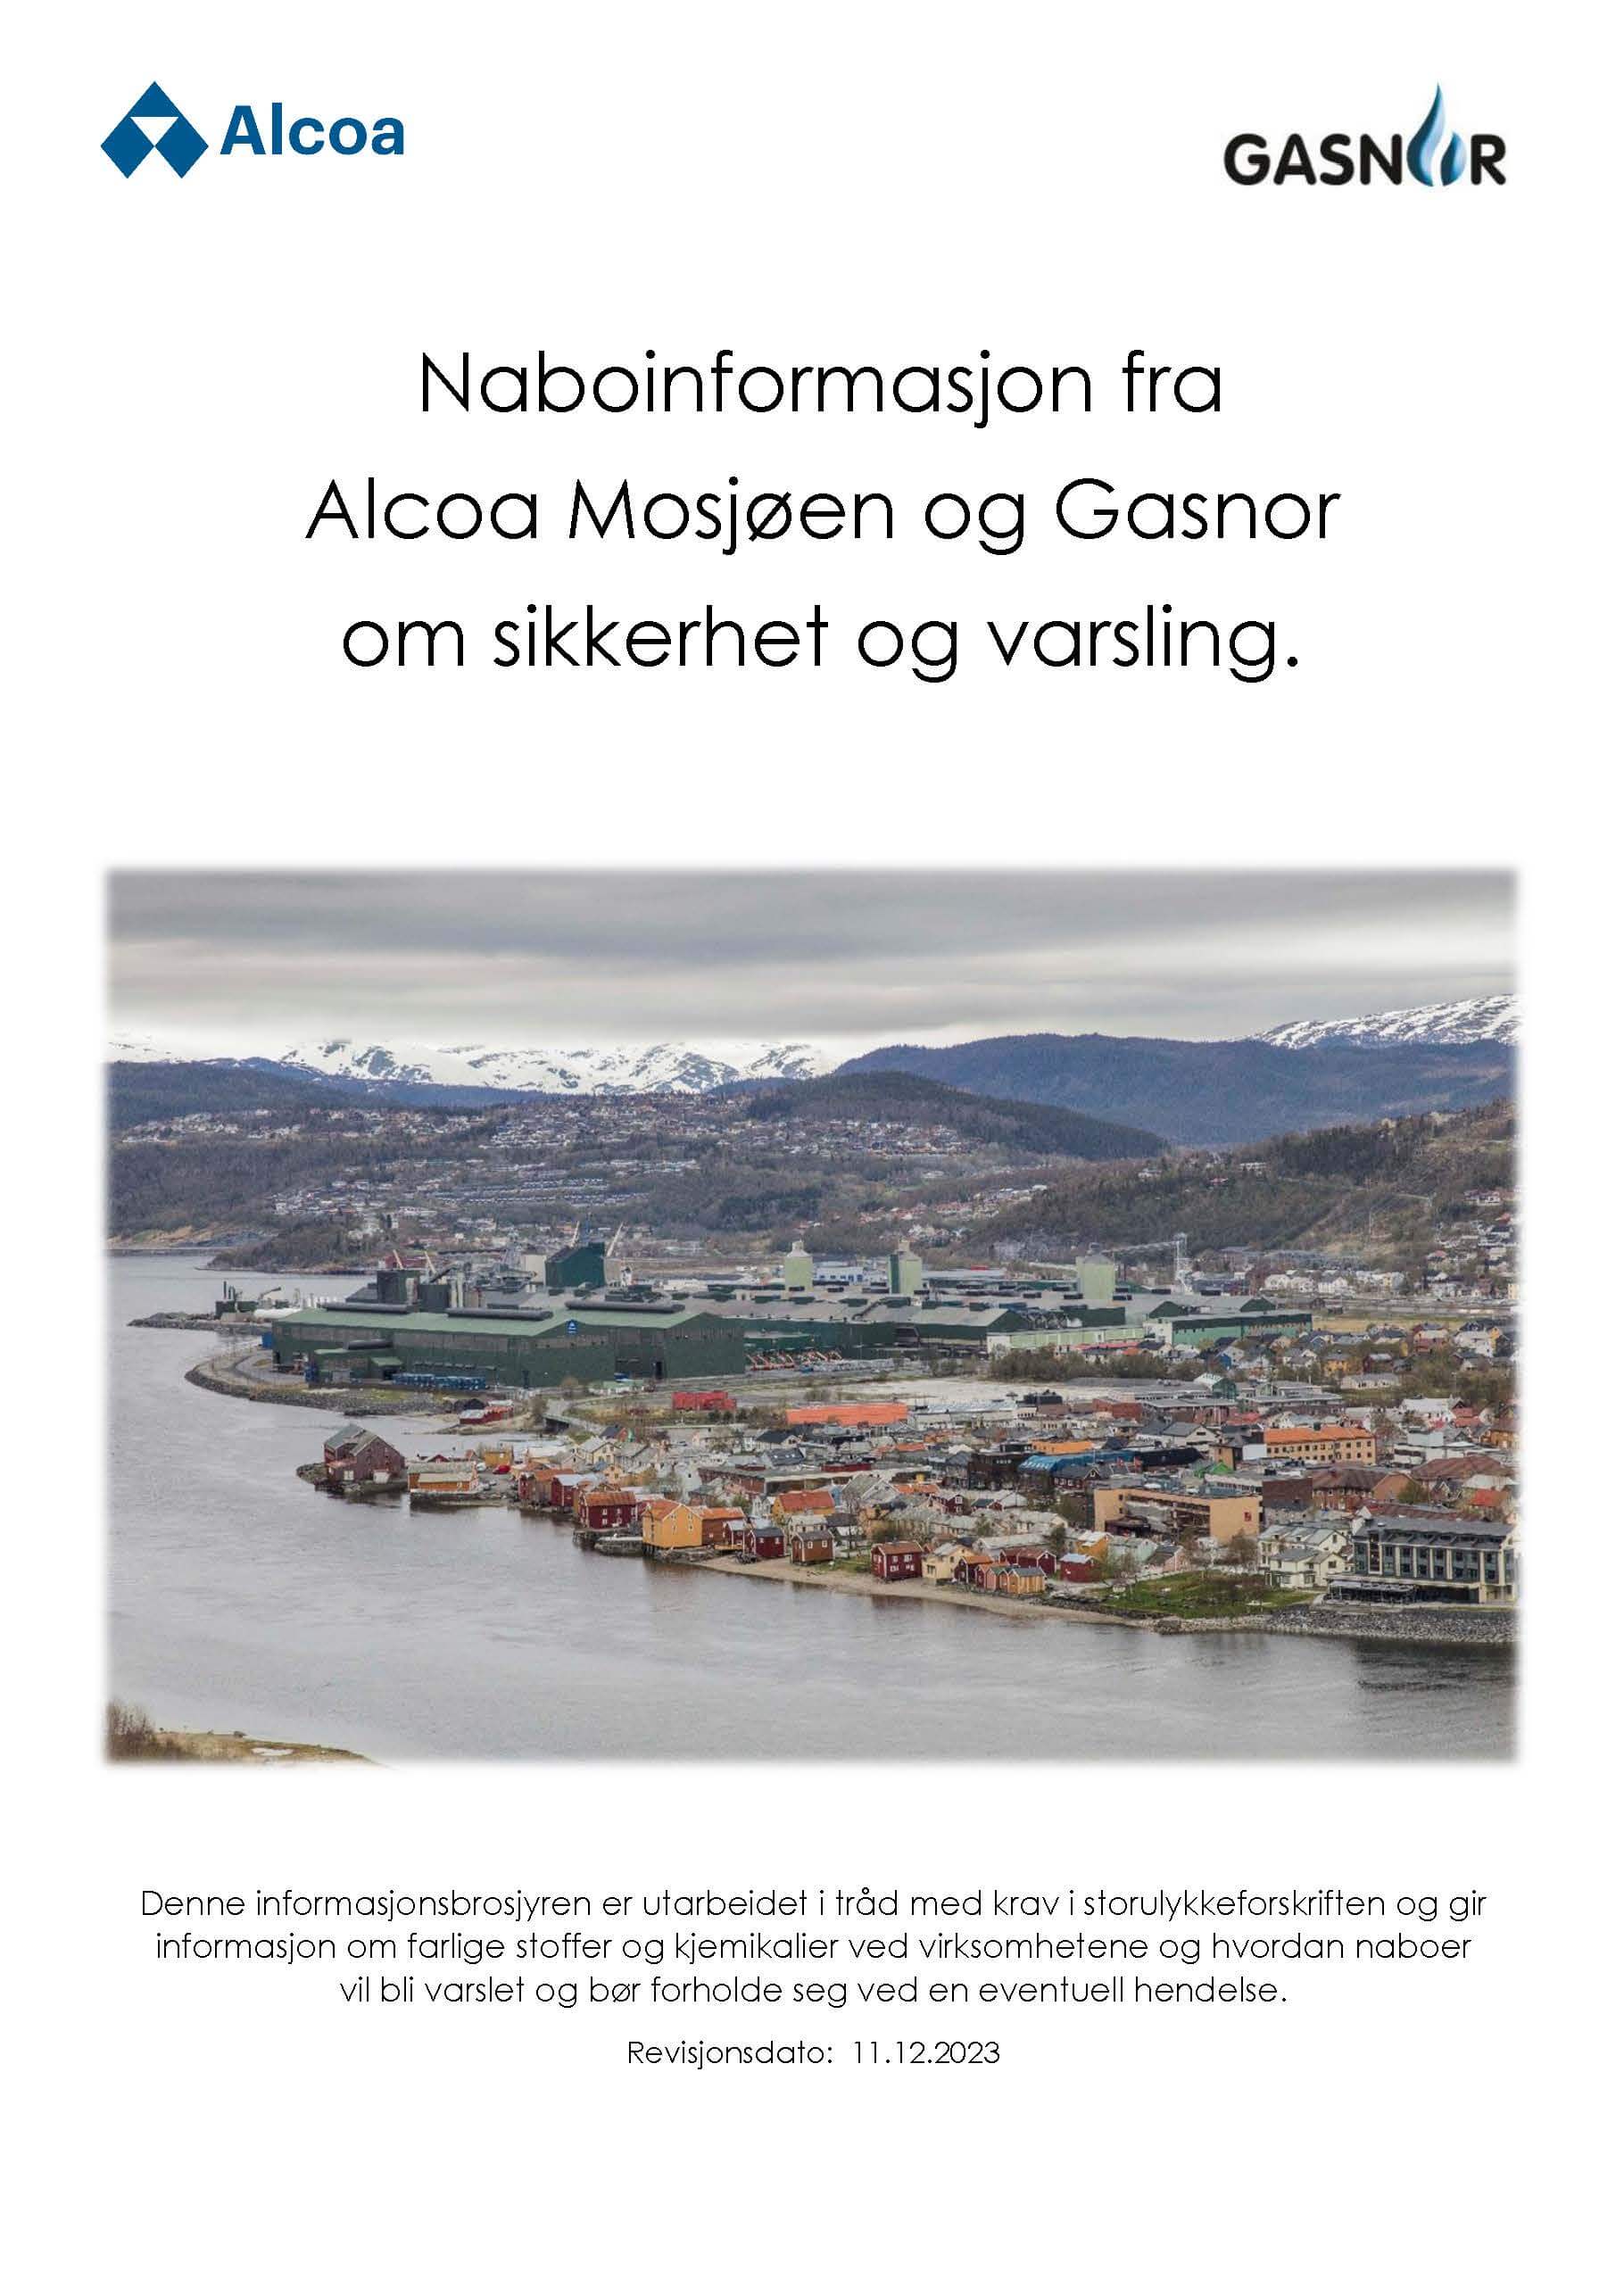 Alcoa Mosjøen Storulykke Informasjon